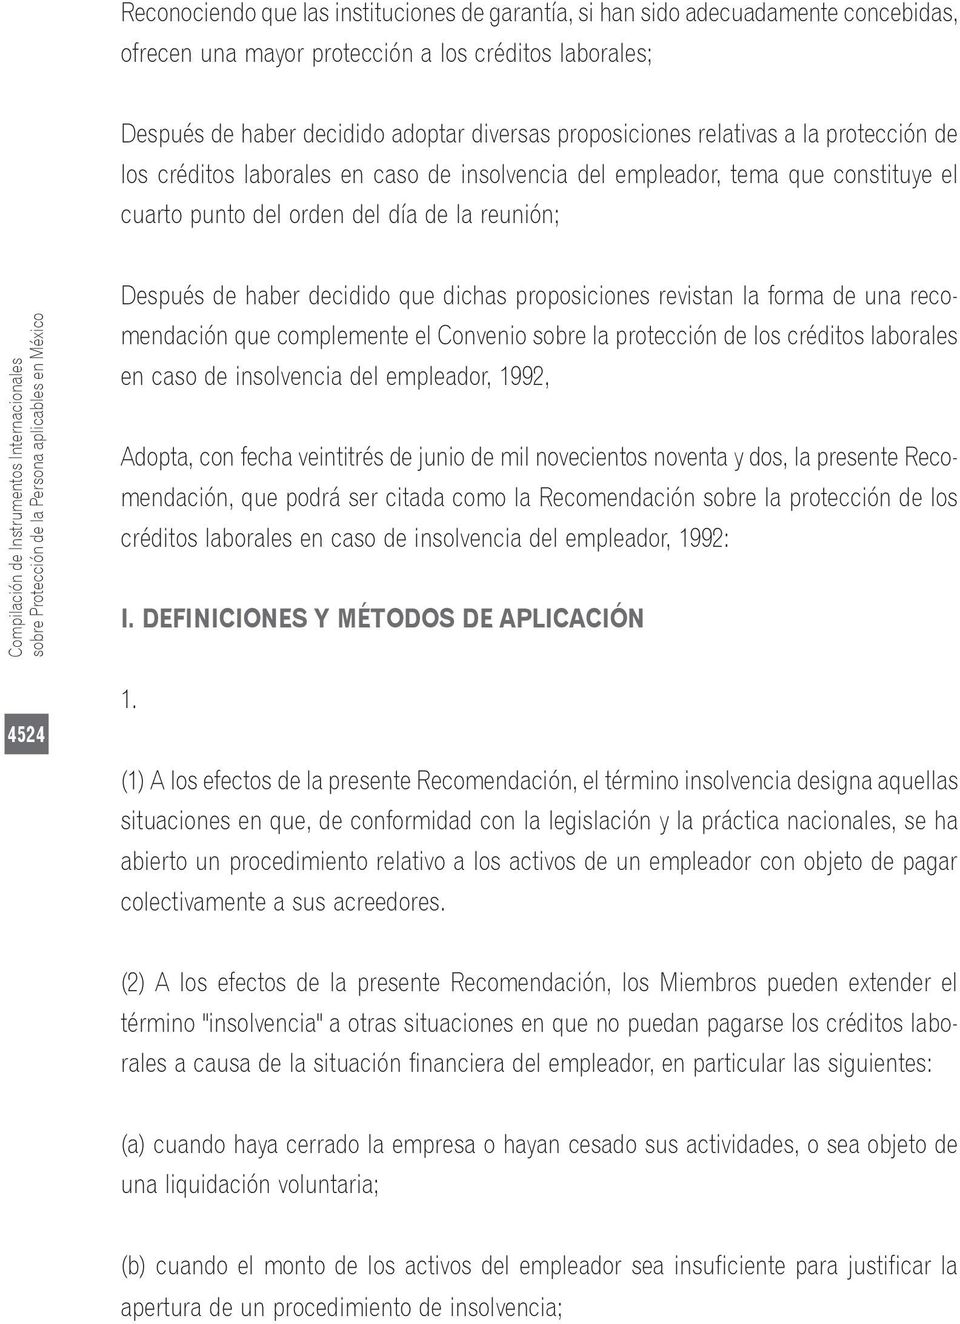 Internacionales sobre Protección de la Persona aplicables en México Después de haber decidido que dichas proposiciones revistan la forma de una recomendación que complemente el Convenio sobre la